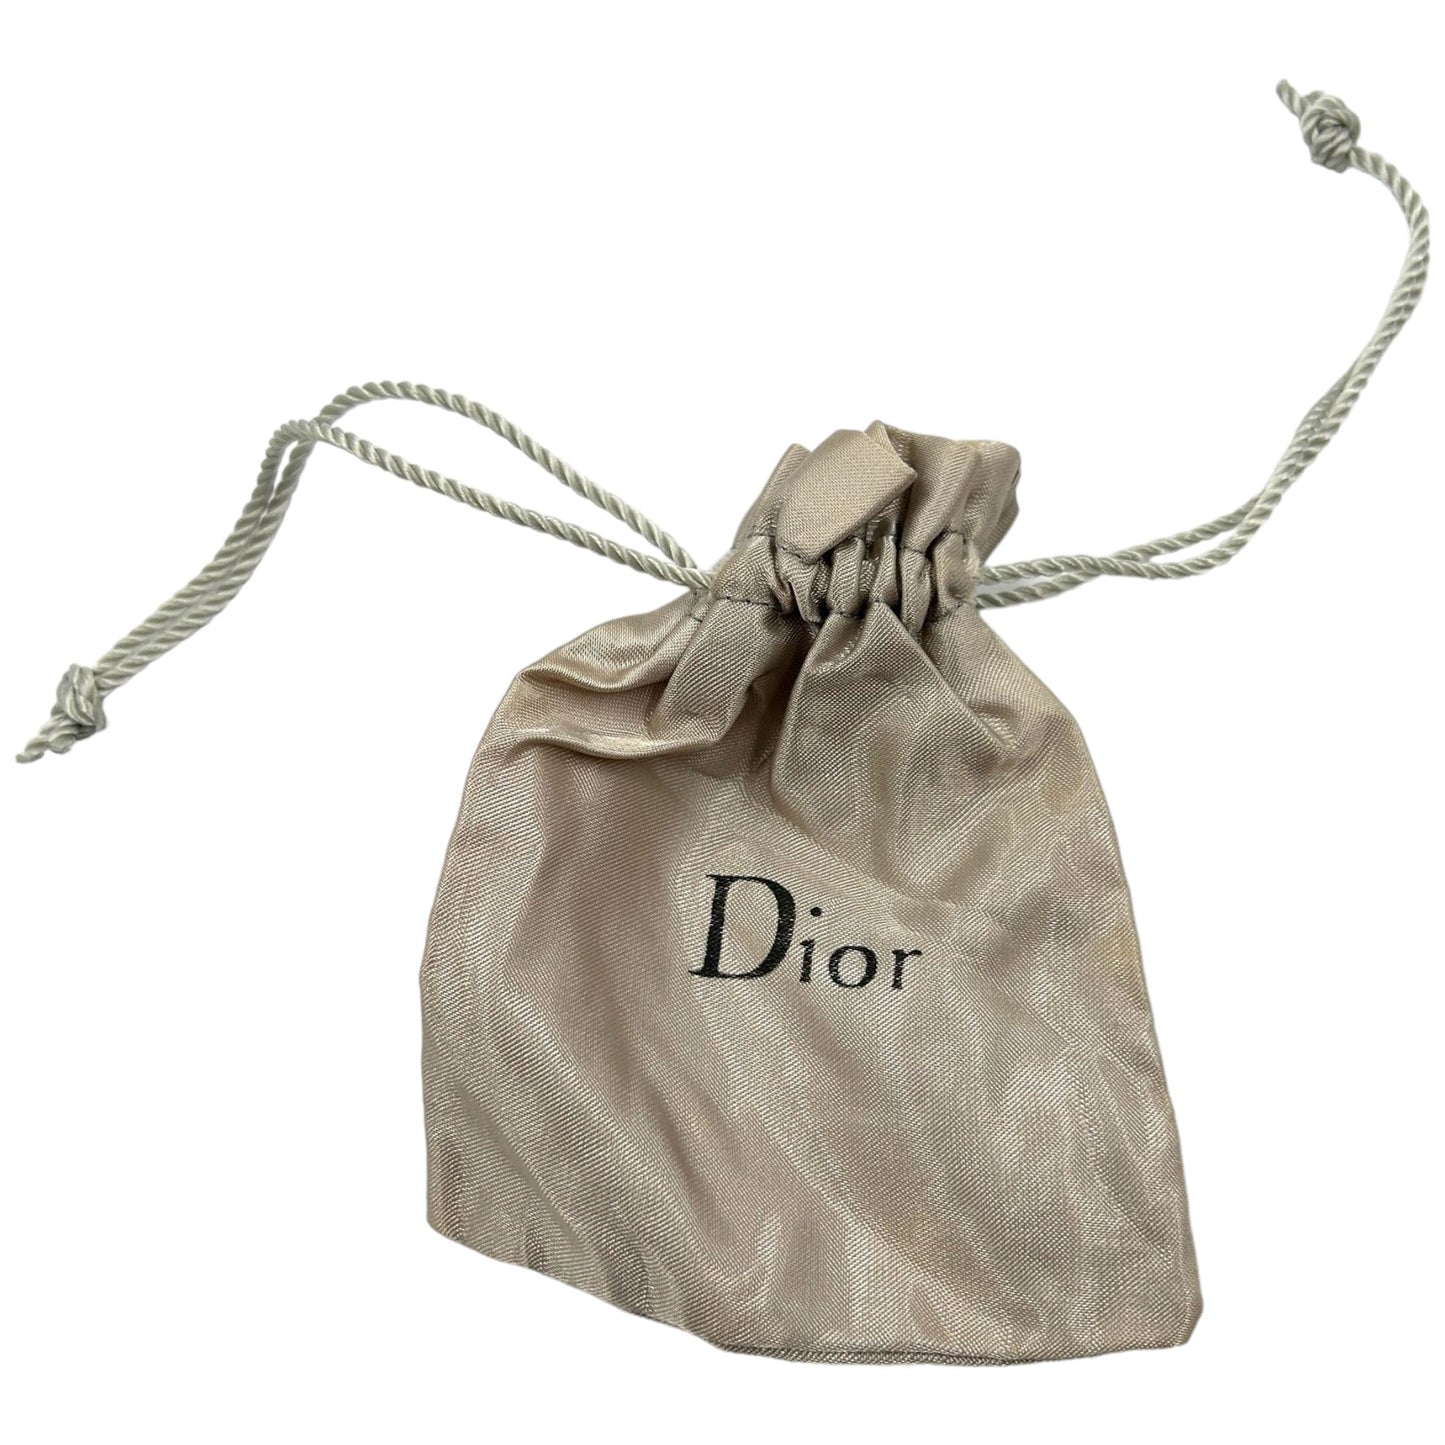 Vintage Christian Dior Charm Bracelet